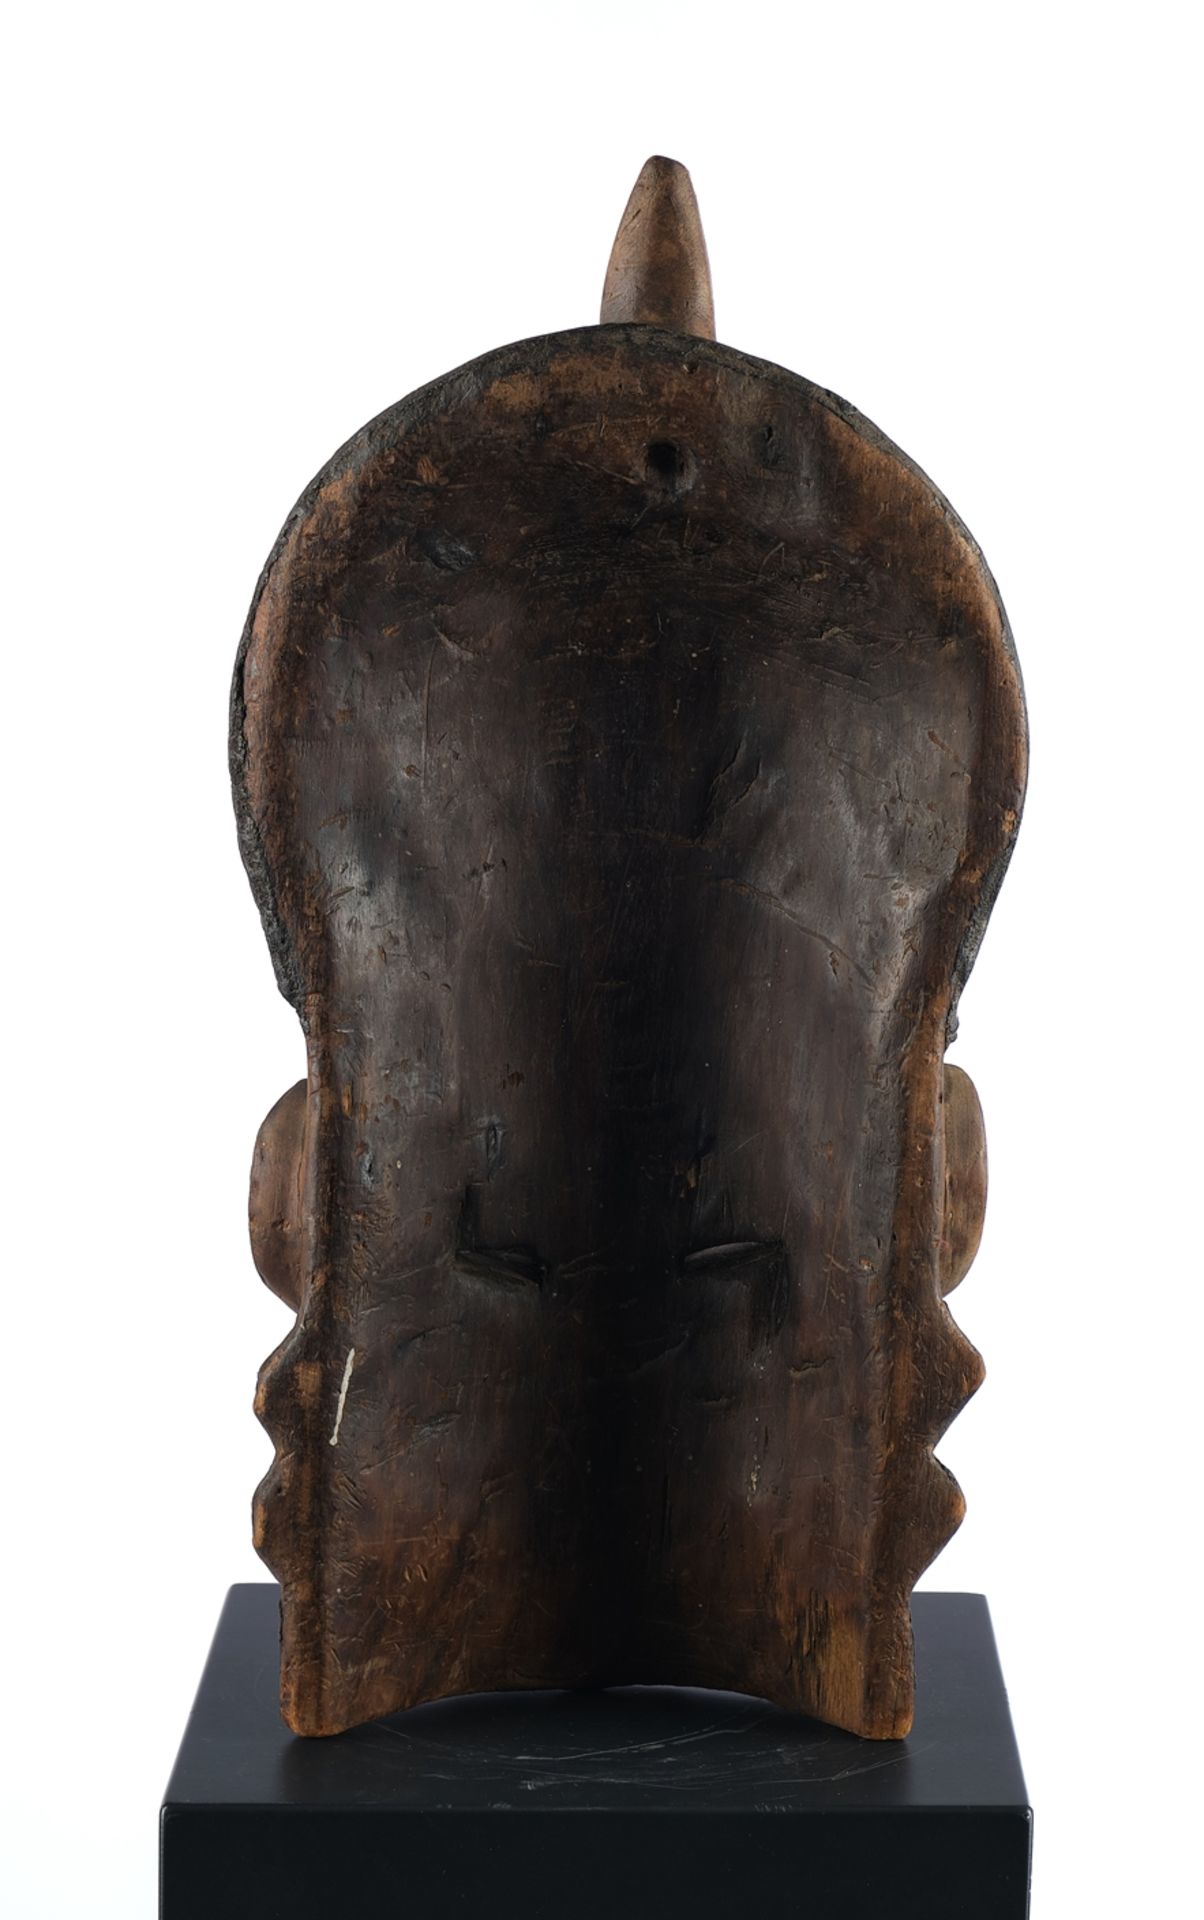 Gesichtsmaske, Afrika, Holz, geschlitzte Augen, turbanförmiger Aufsatz, kleine bunte Perlchen, Musc - Bild 2 aus 2